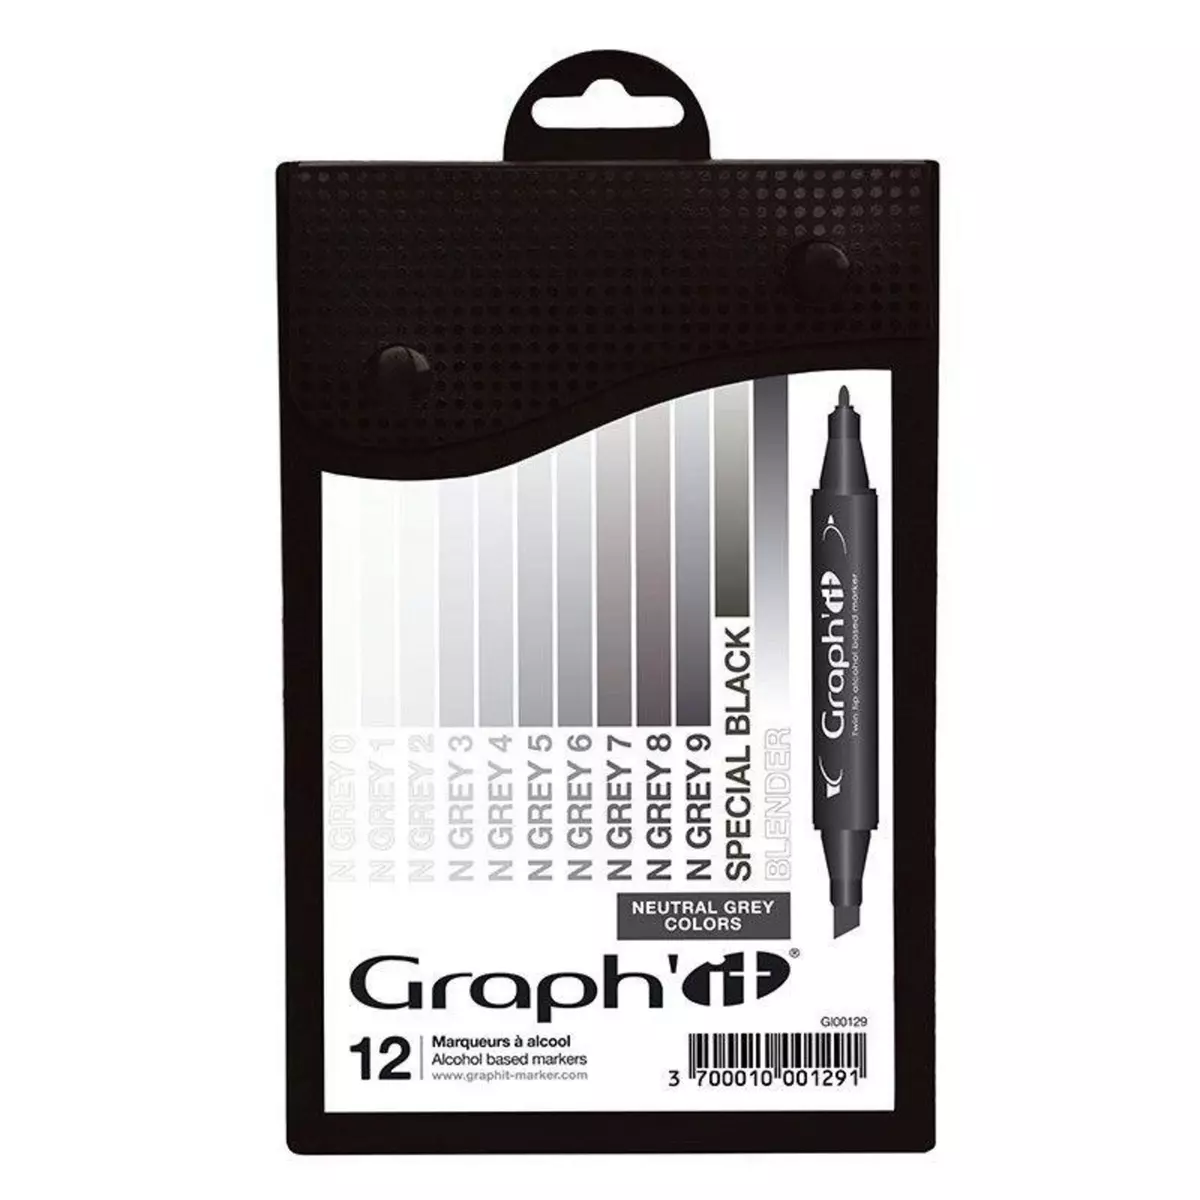 Graph it Set 12 marqueurs Graph'It - Neutral Greys colors